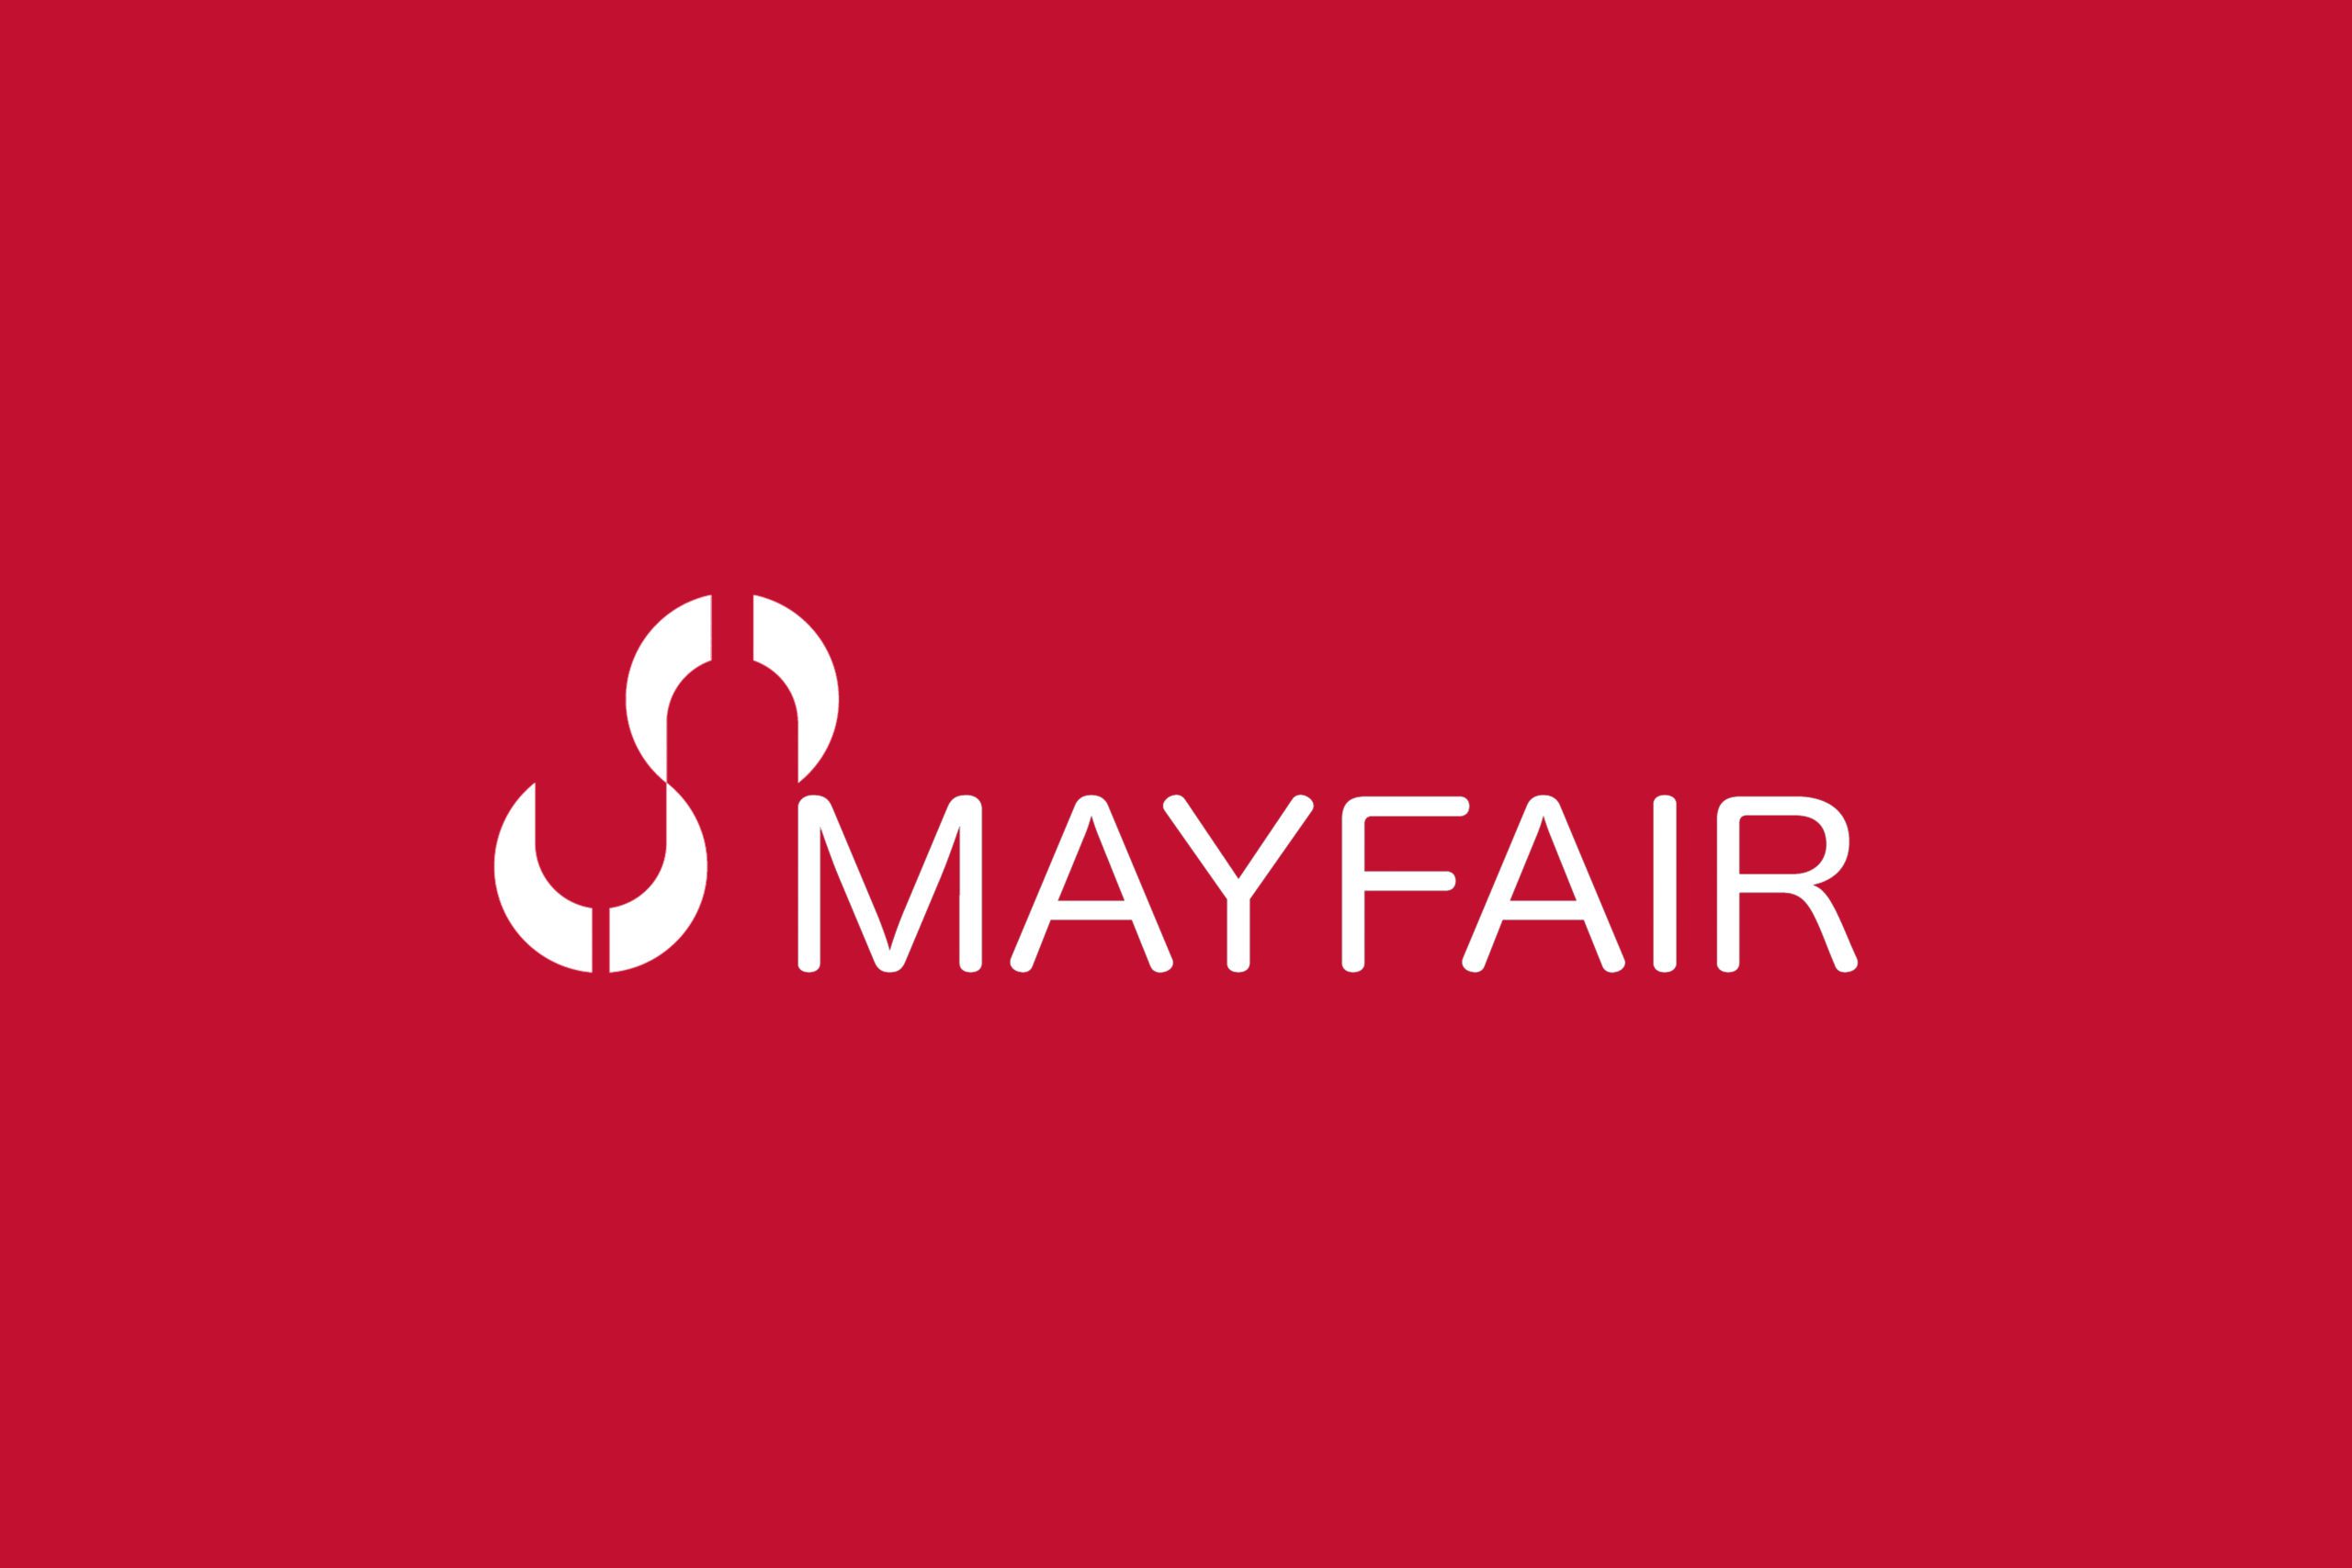 Mayfair white logo on red